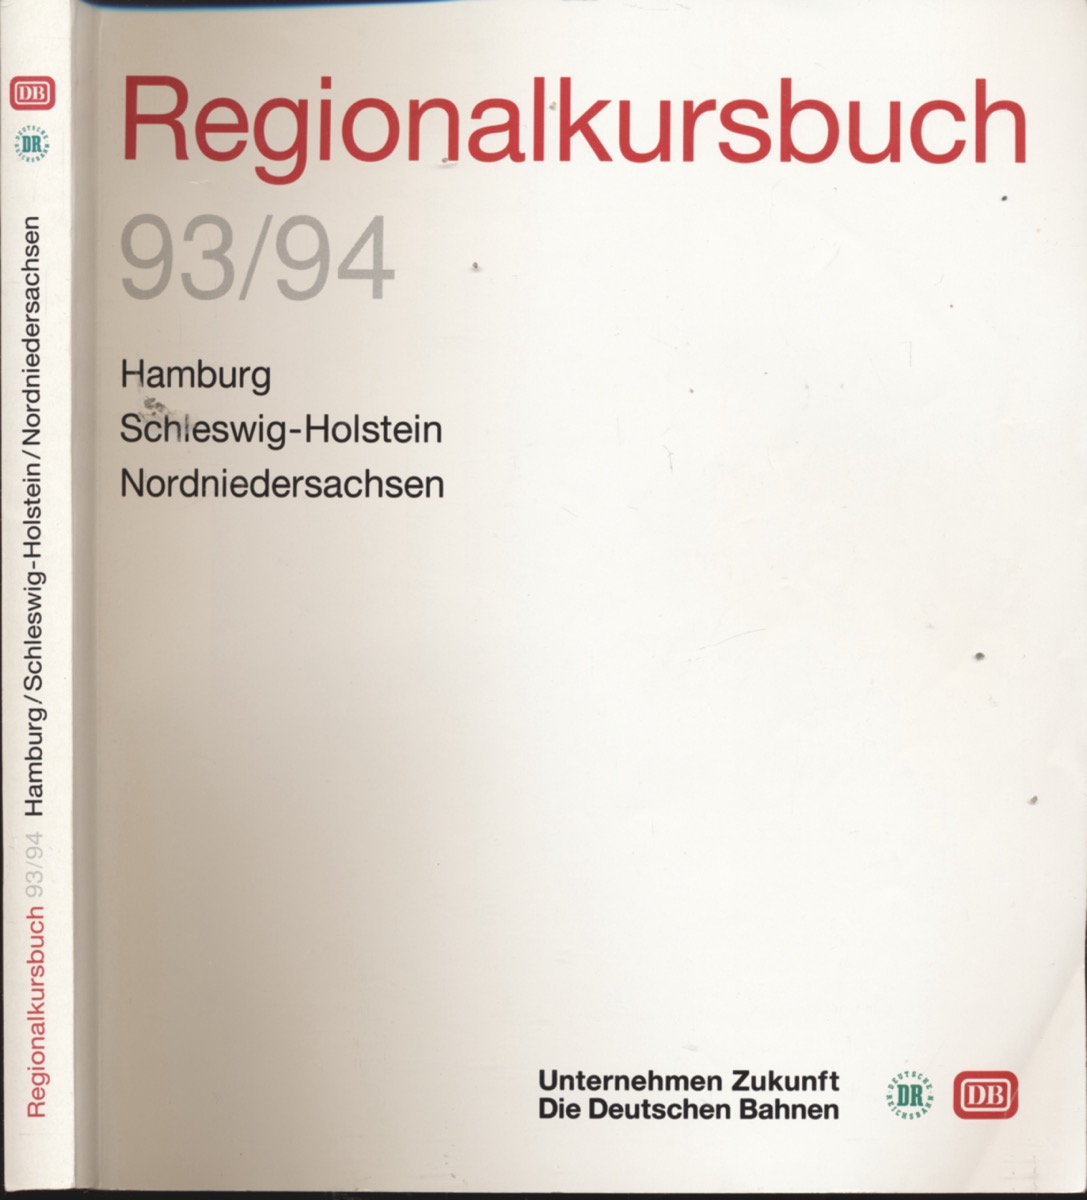   Regionalkursbuch Hamburg/Schleswig-Holstein/Nordniedersachsen 93/94, gültig vom 23. Mai 1993 bis 28. Mai 1994. 